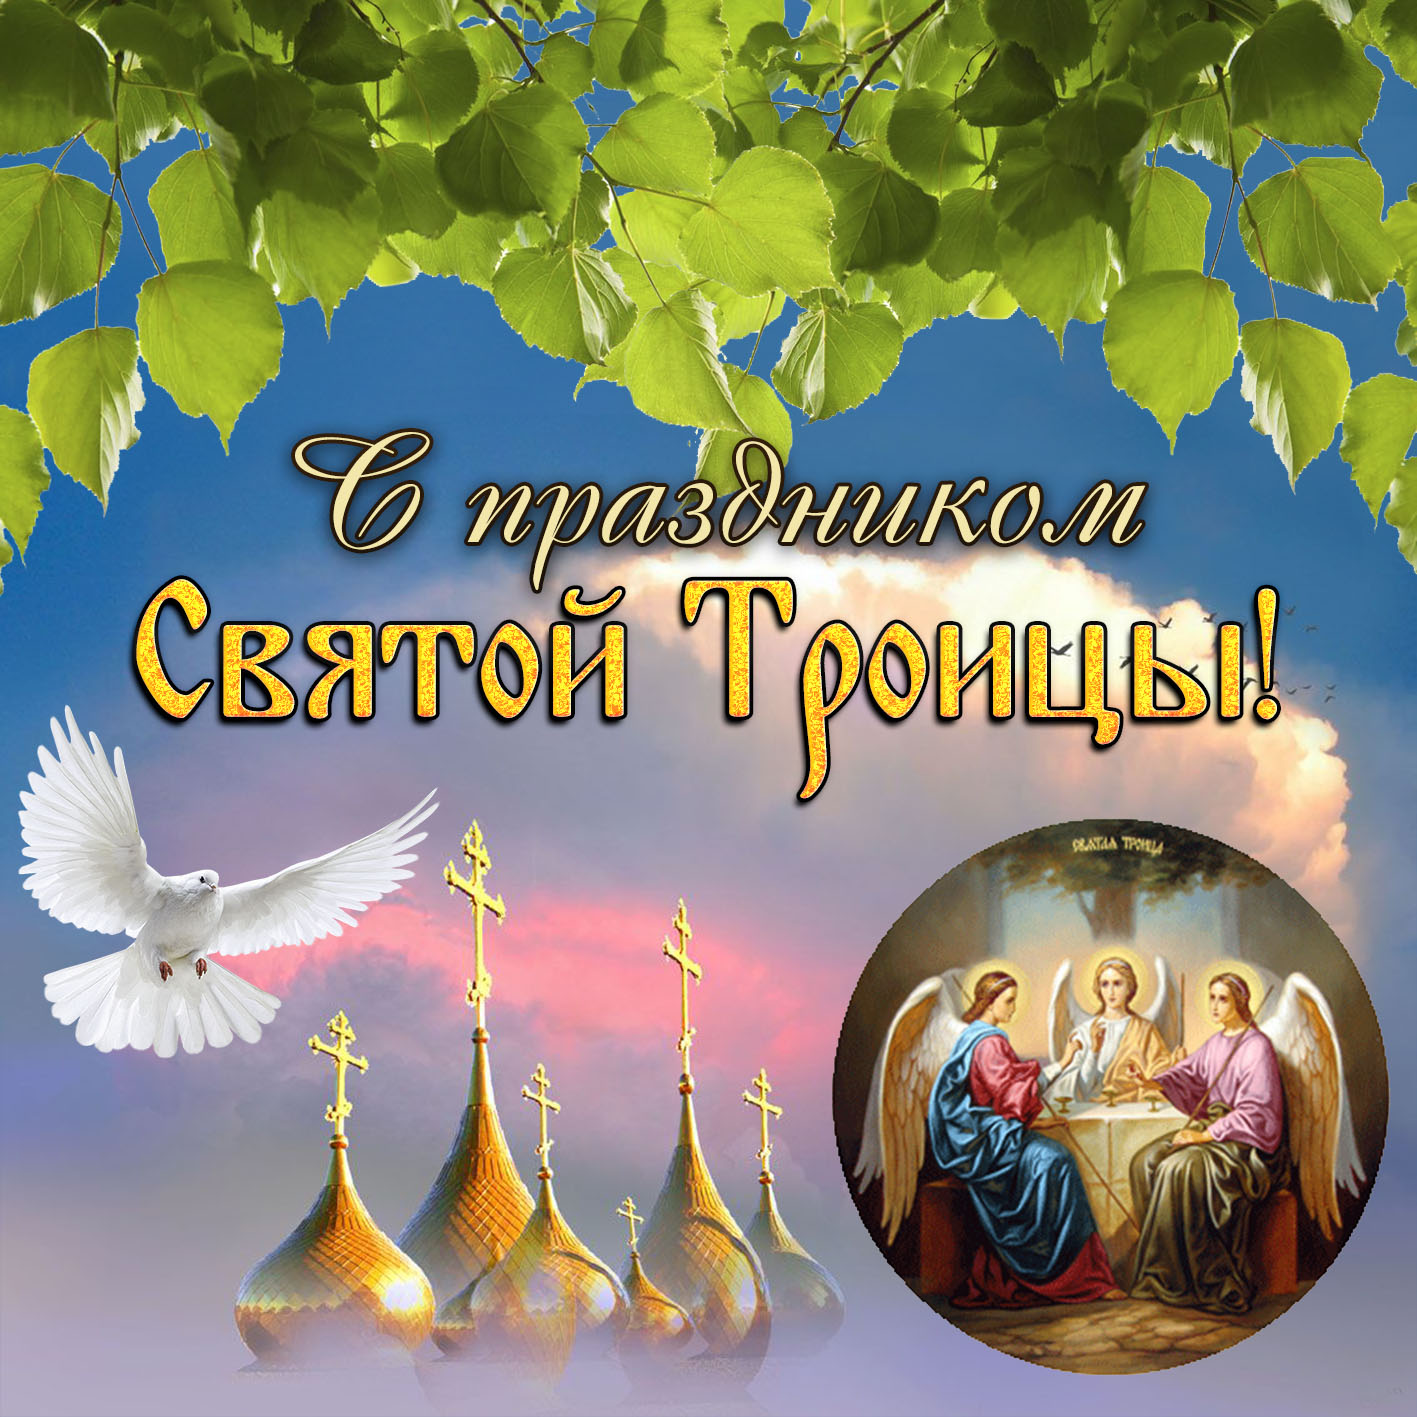 Нежная открытка с праздником святой троицы